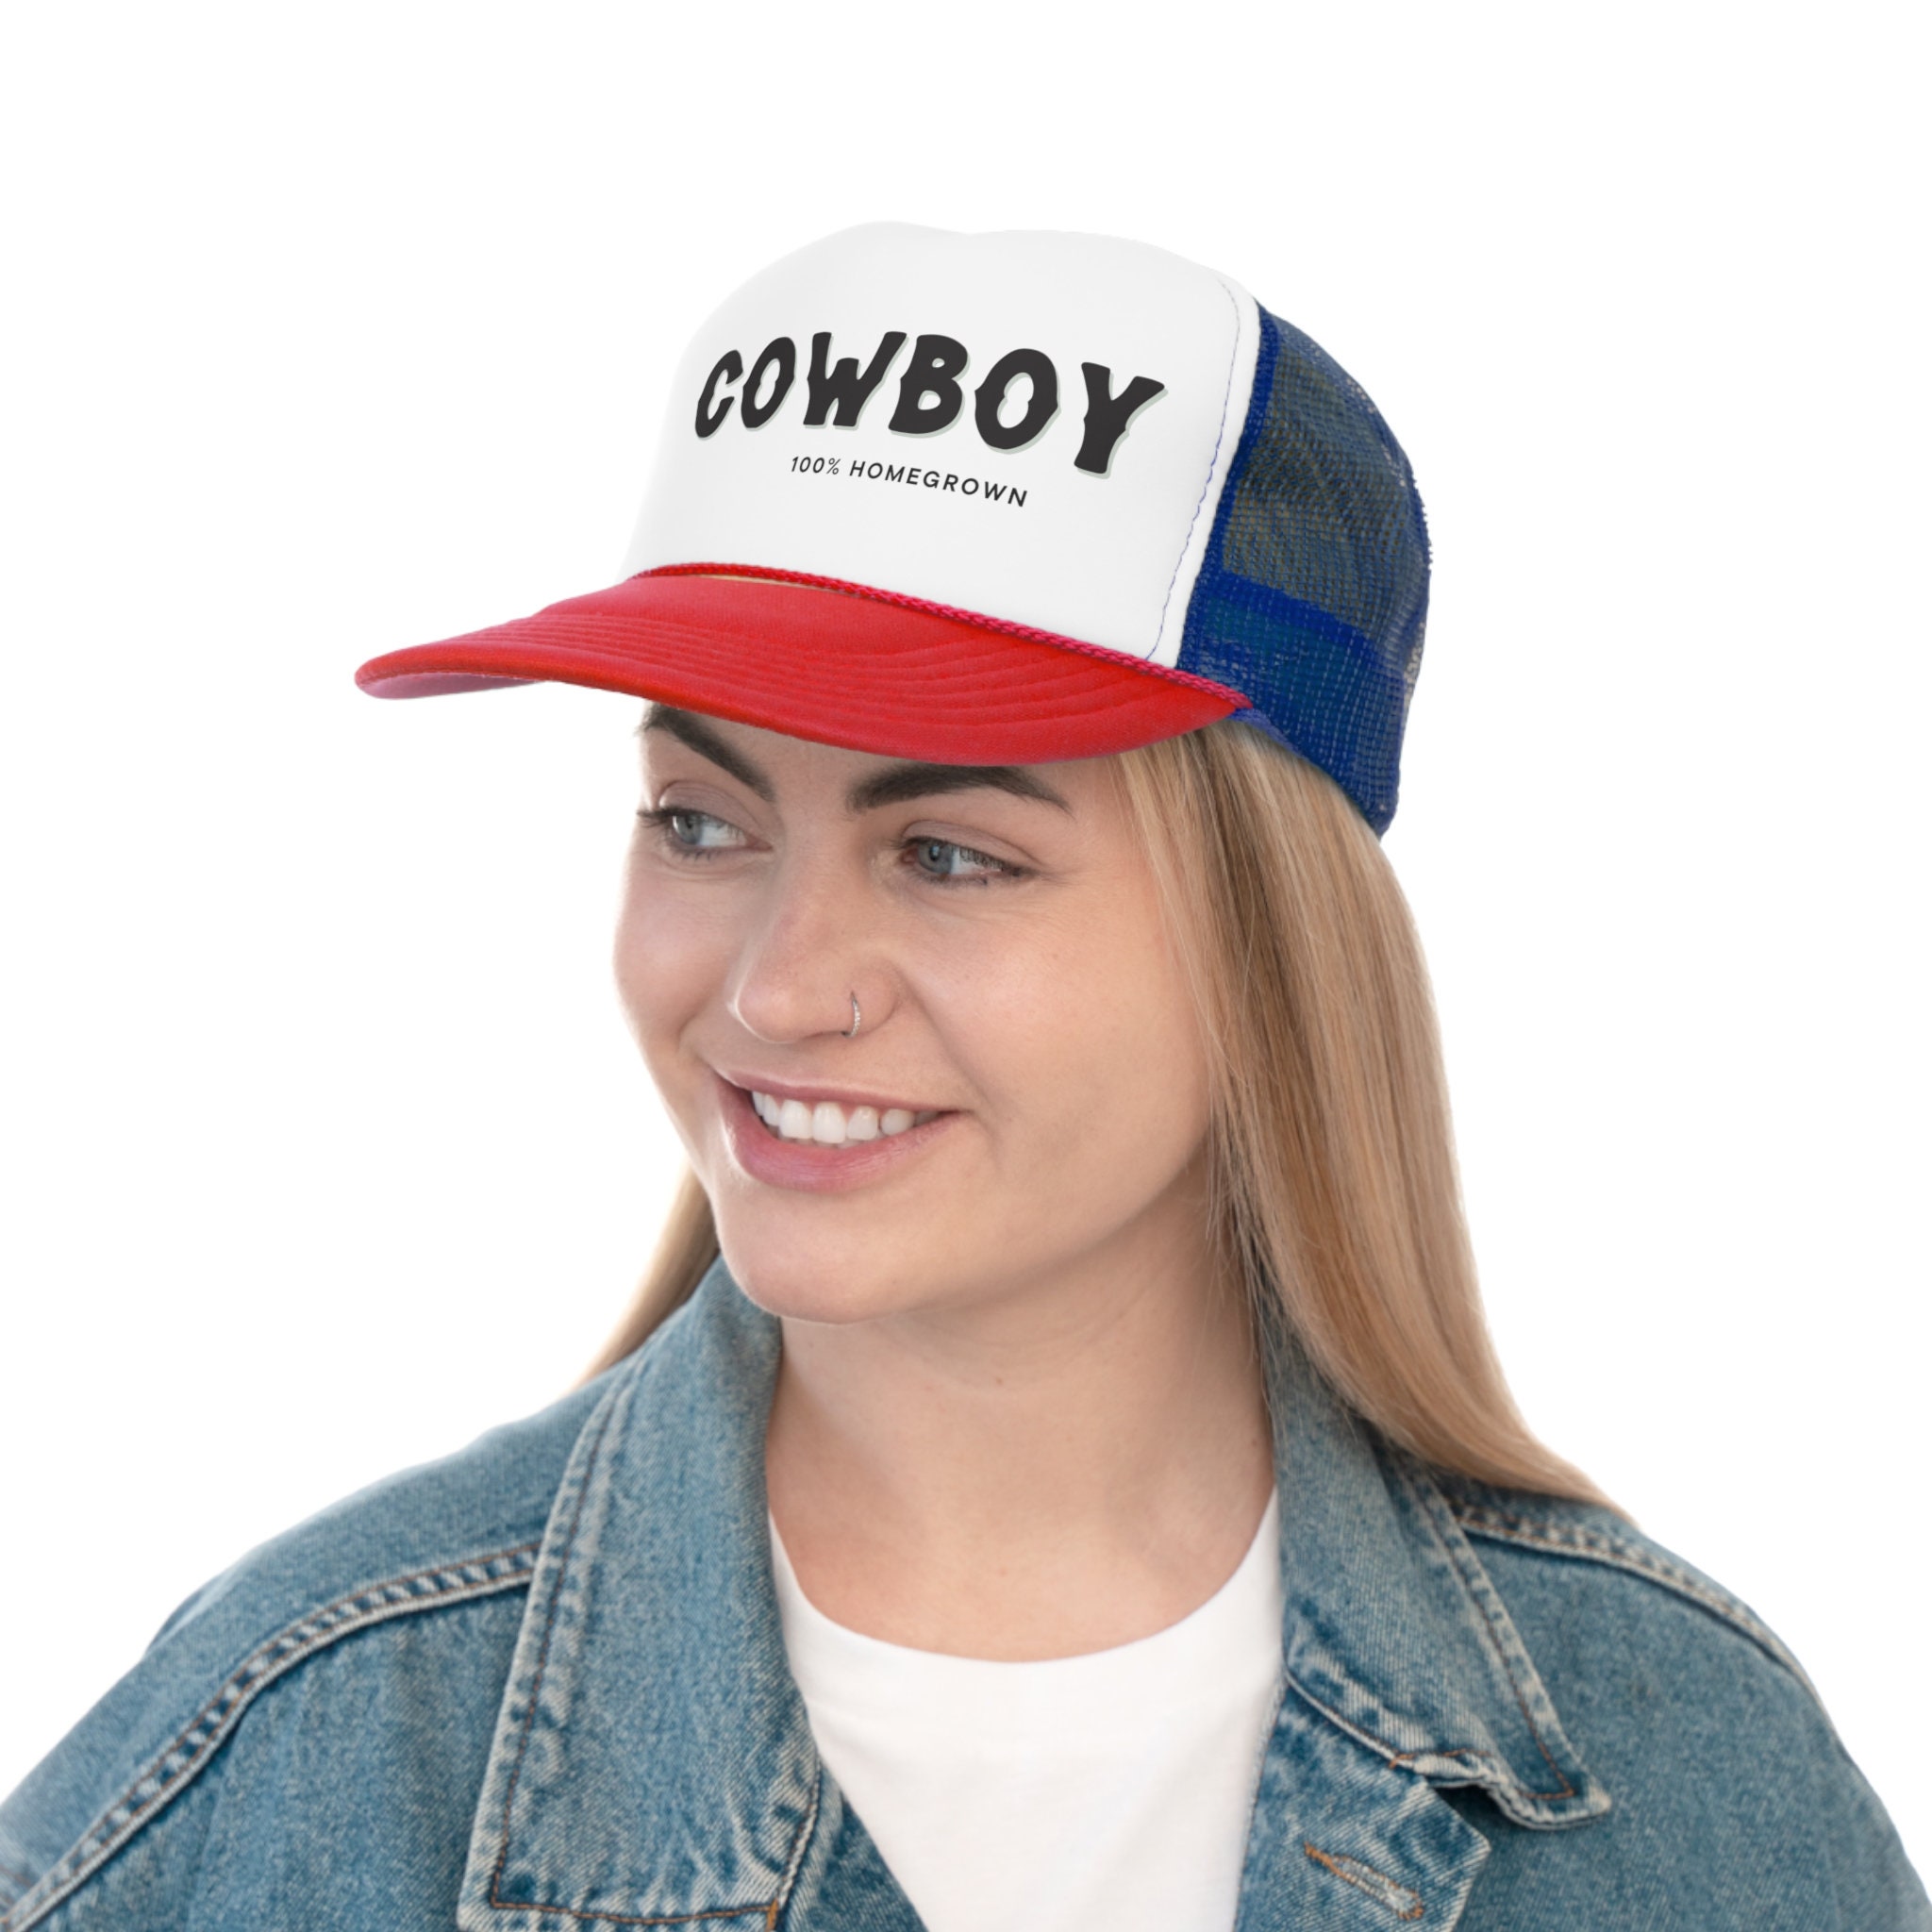 Discover Cowboy Trucker Caps